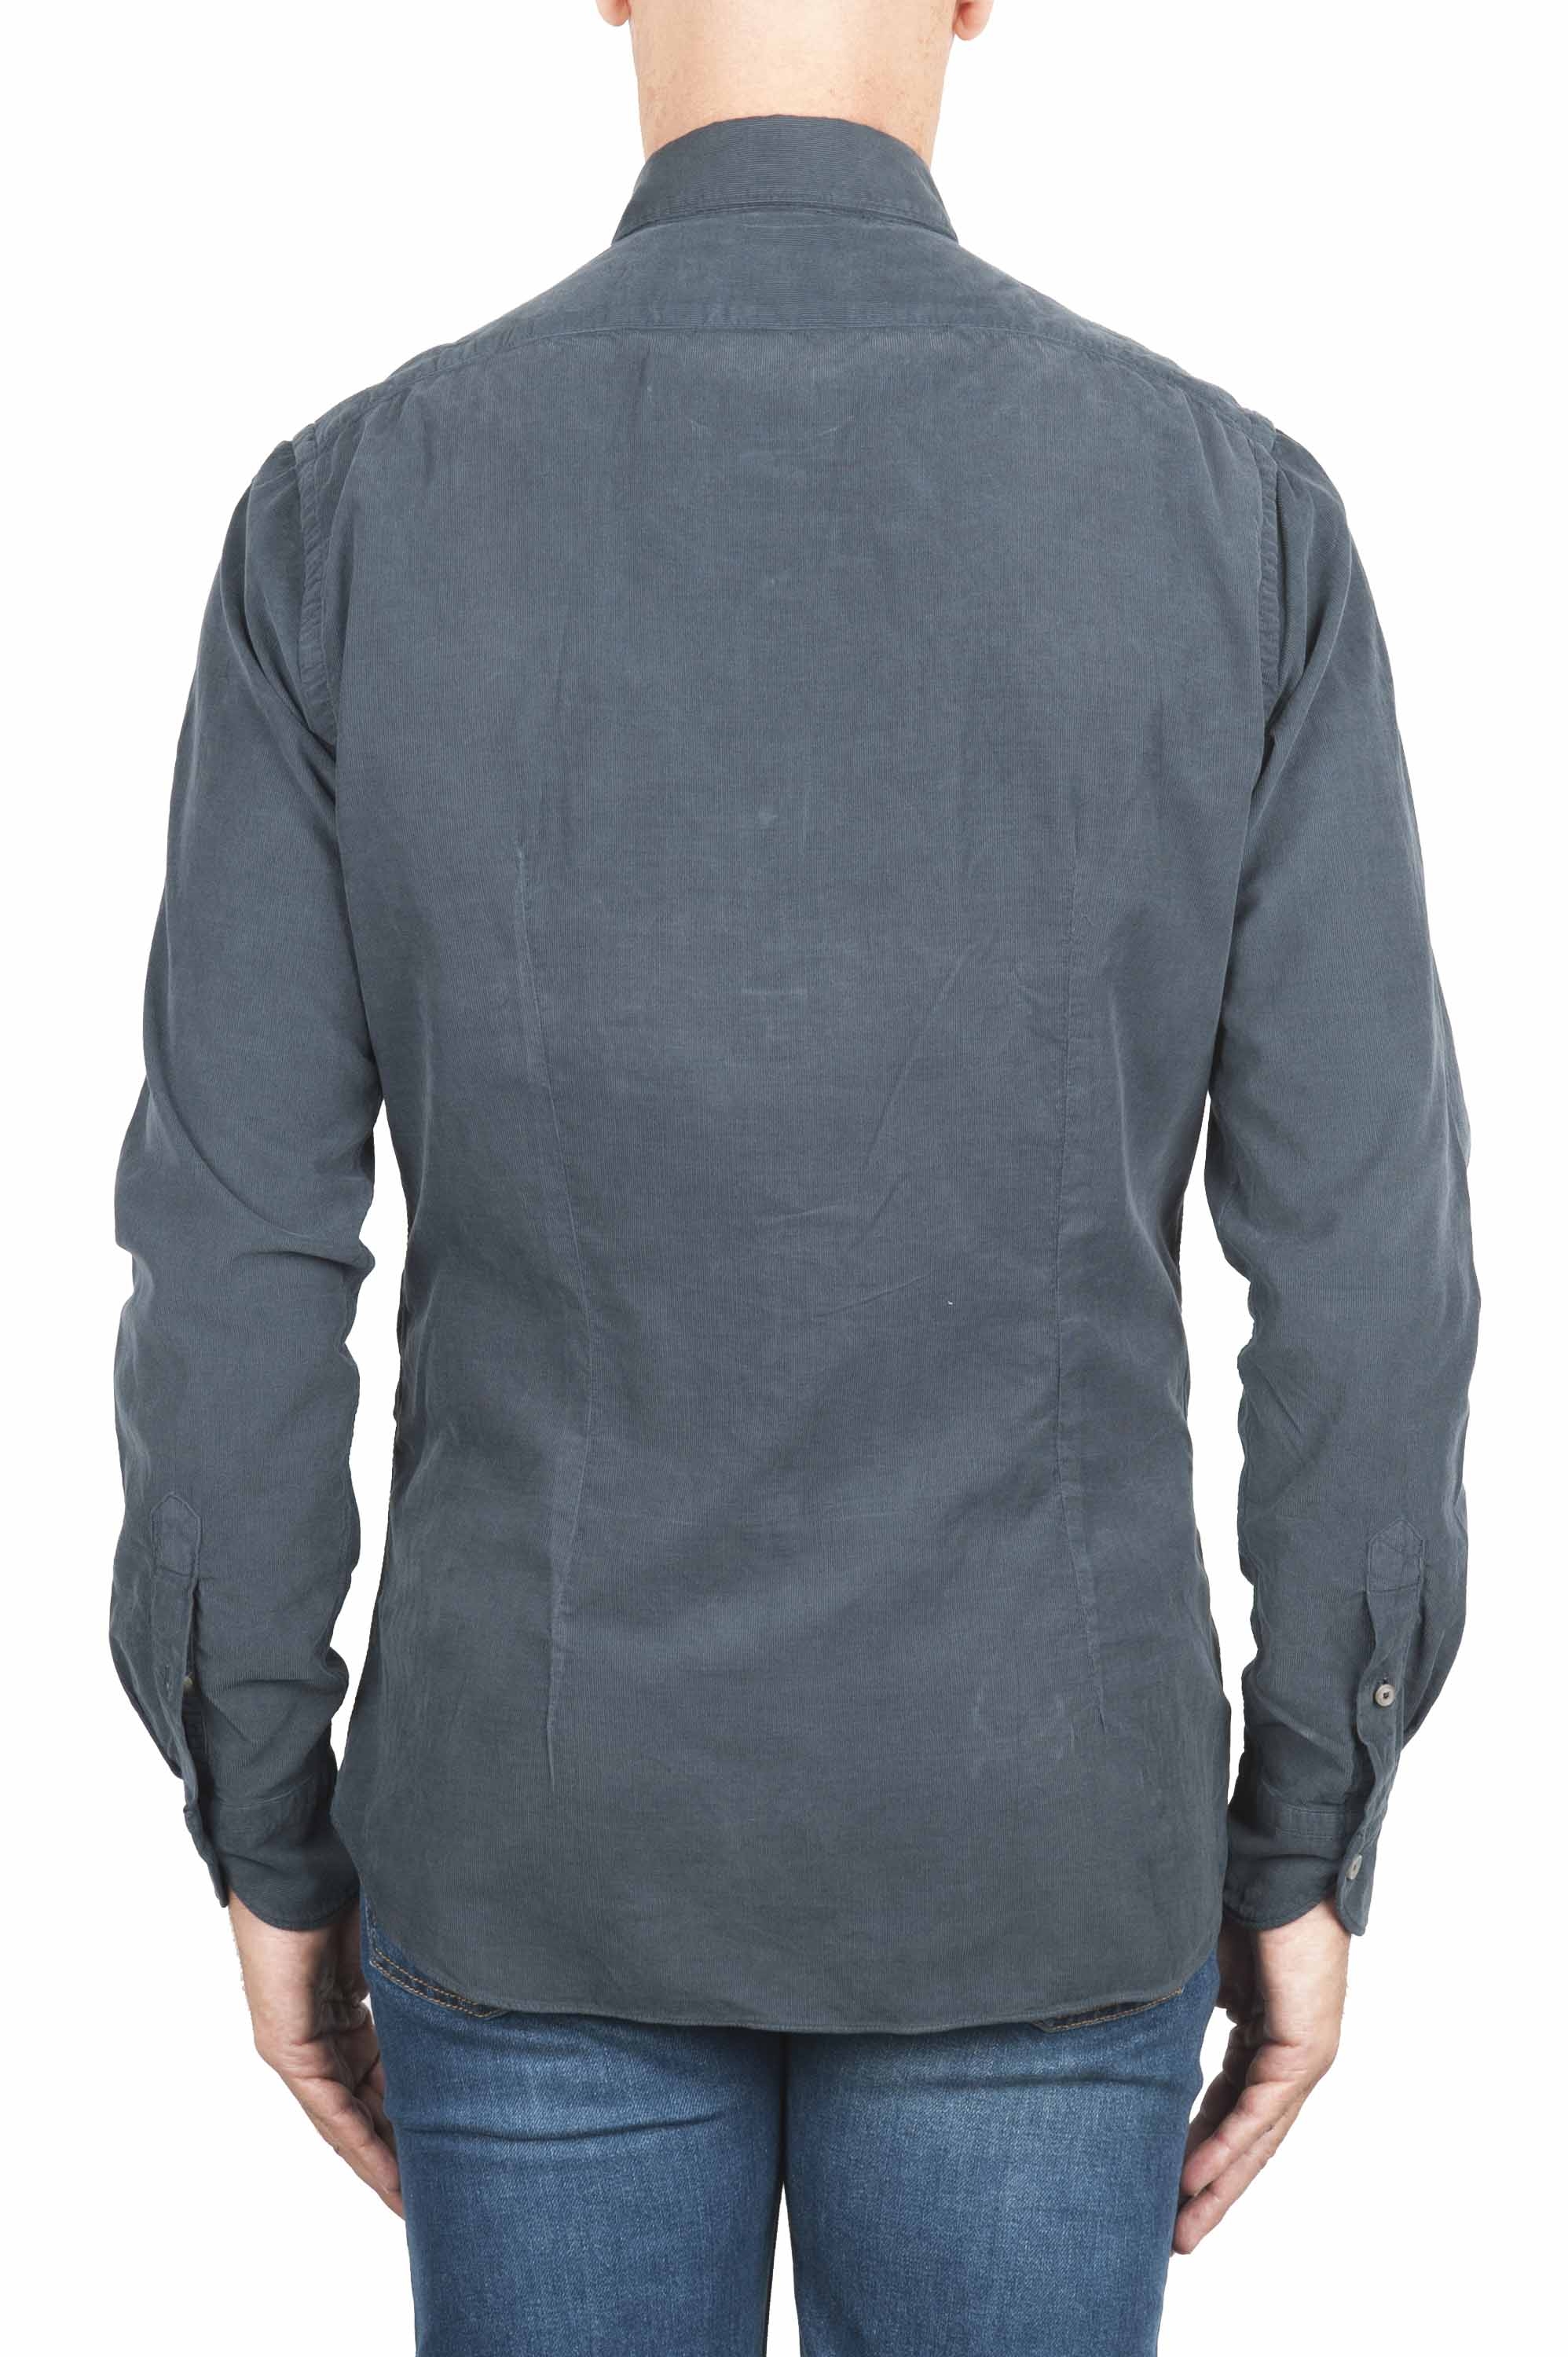 SBU 01320 Grey corduroy cotton shirt 04